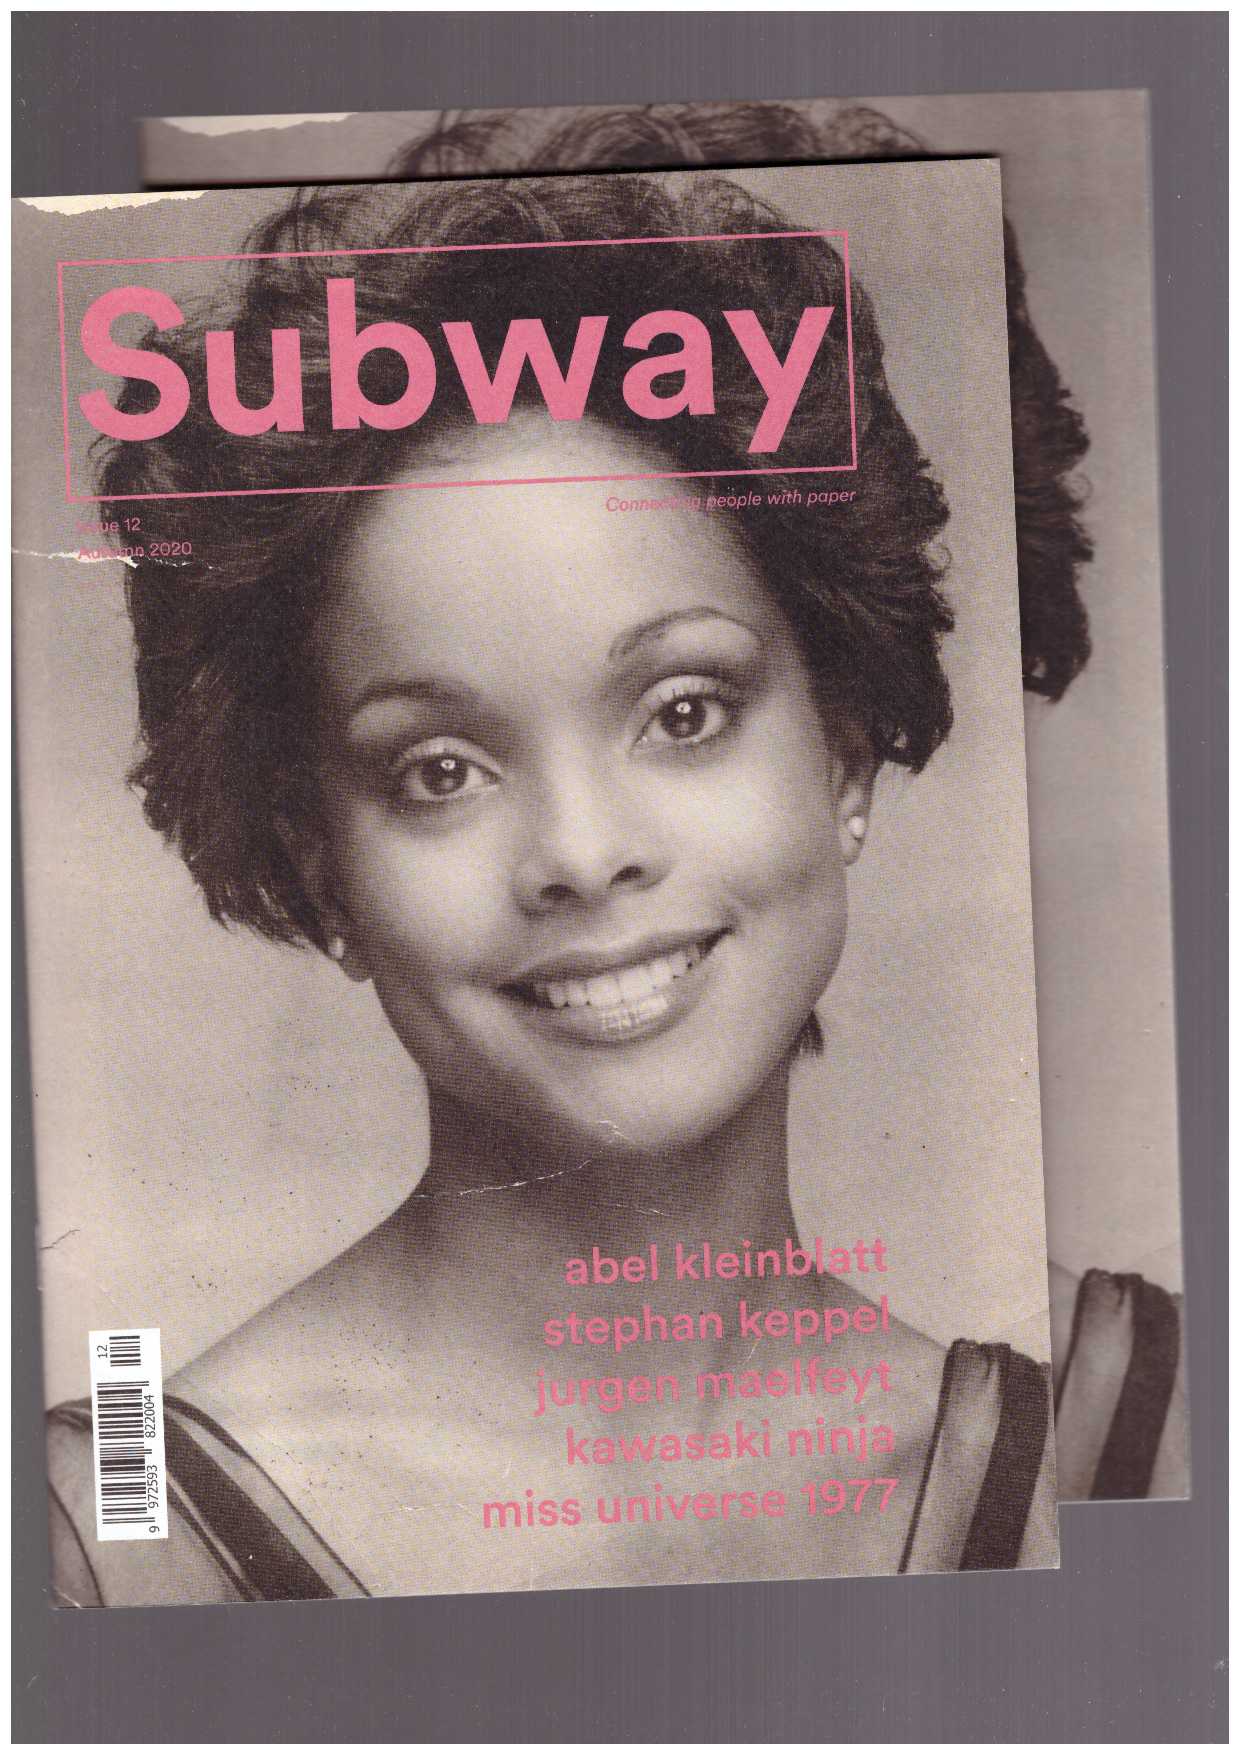 VAN DER WEIJDE, Erik - Subway magazine #12